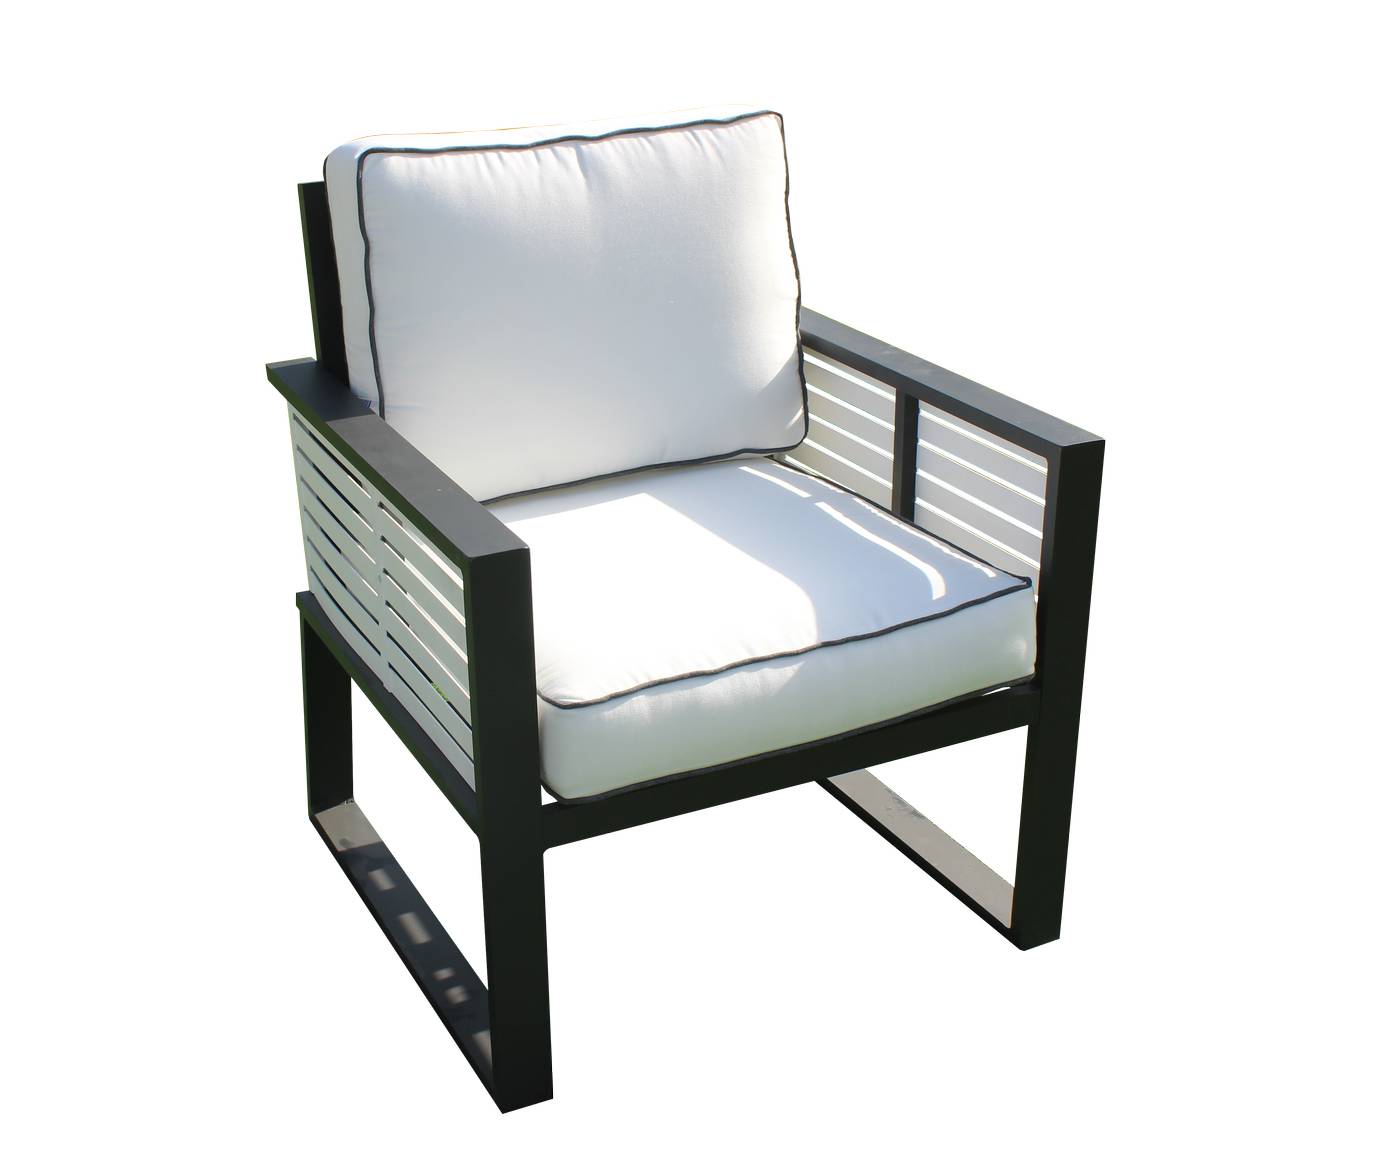 Exclusivo sillón relax de alumnio bicolor, con cojines gran confort desenfundables.